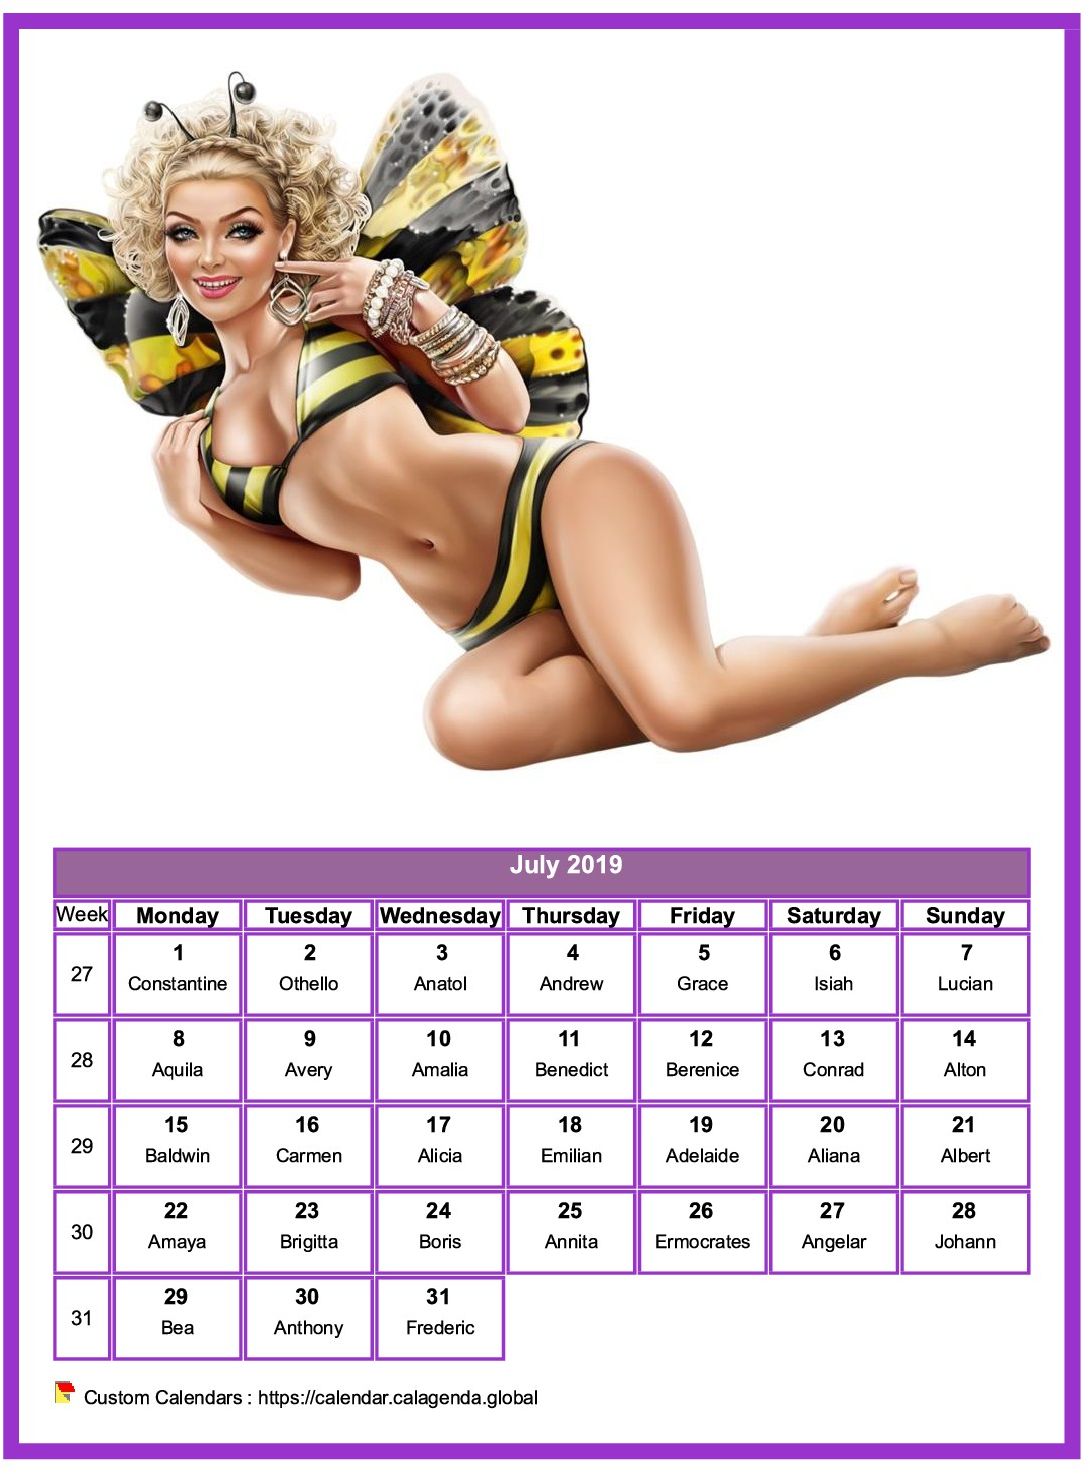 Calendar July 2019 women